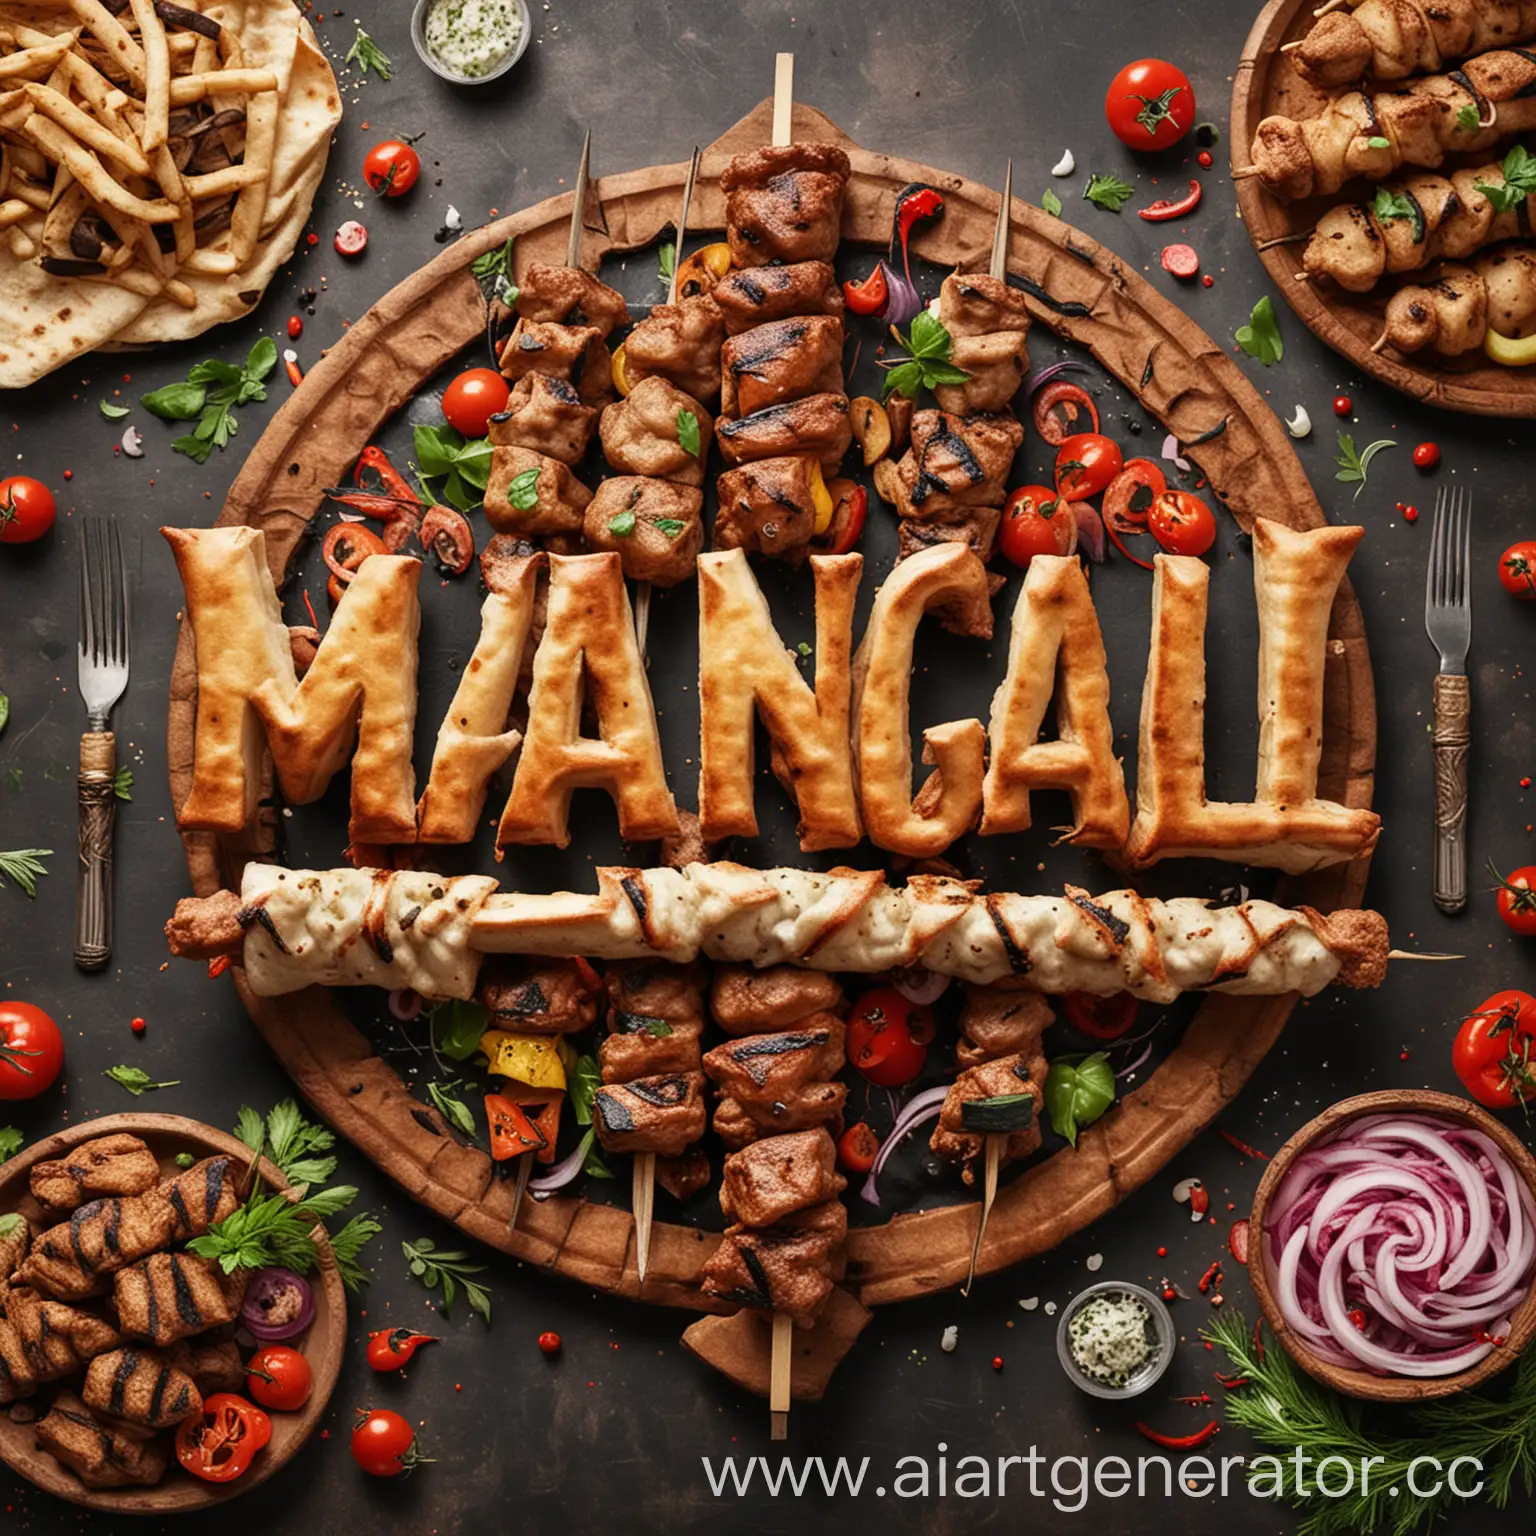 Modern-Logo-Design-Word-MANGAL-on-Kebab-Background